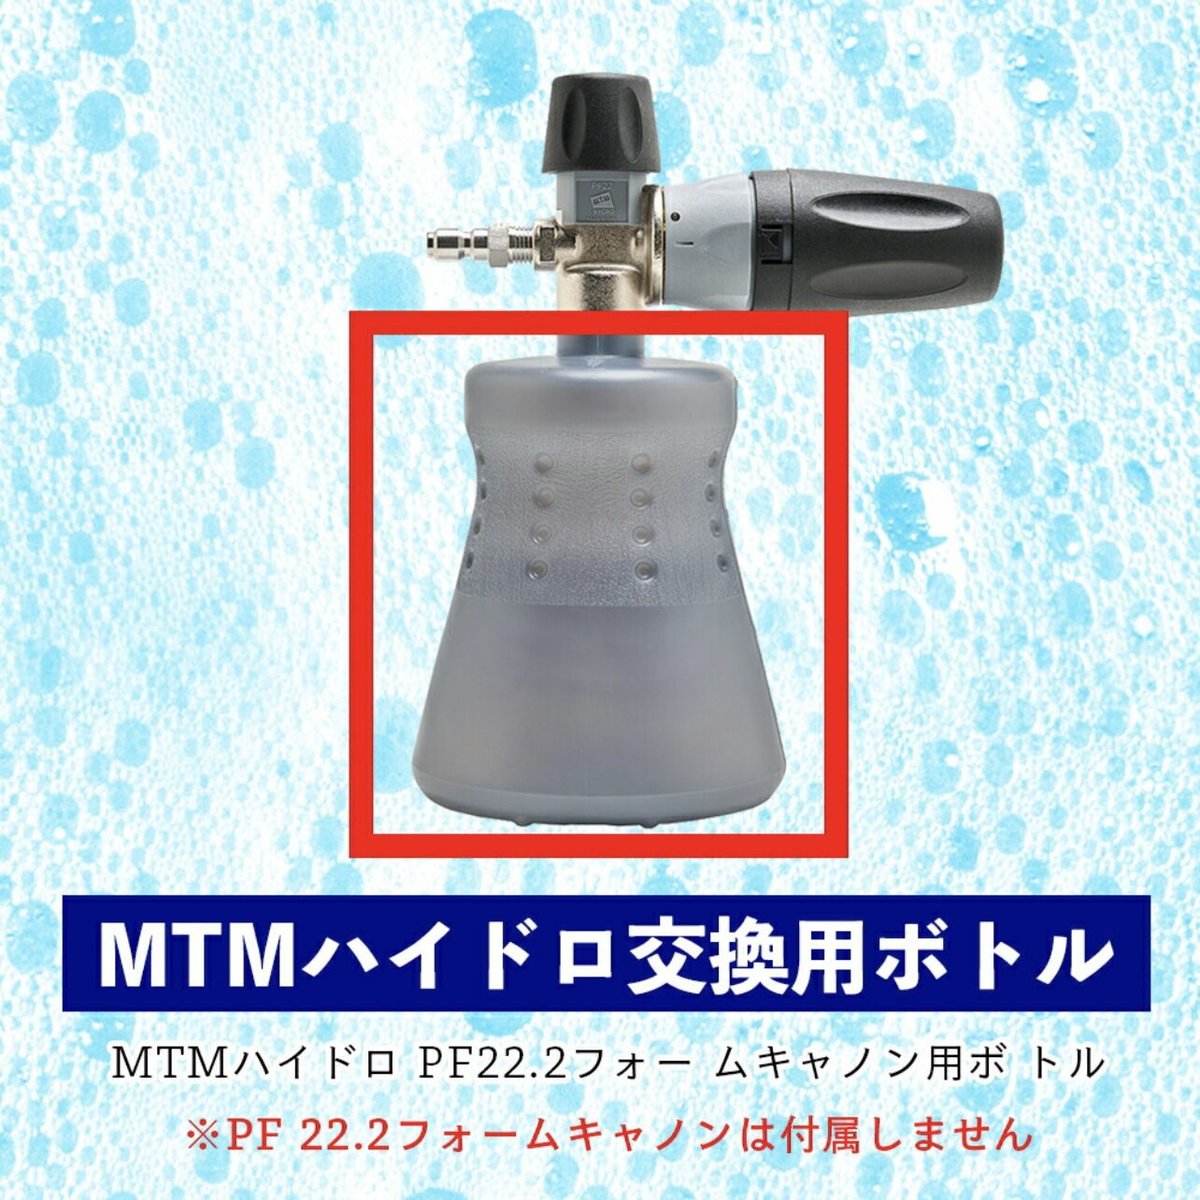 MTM Hydro フォームキャノン PF22.2 日本正規品 メンテナンス用品